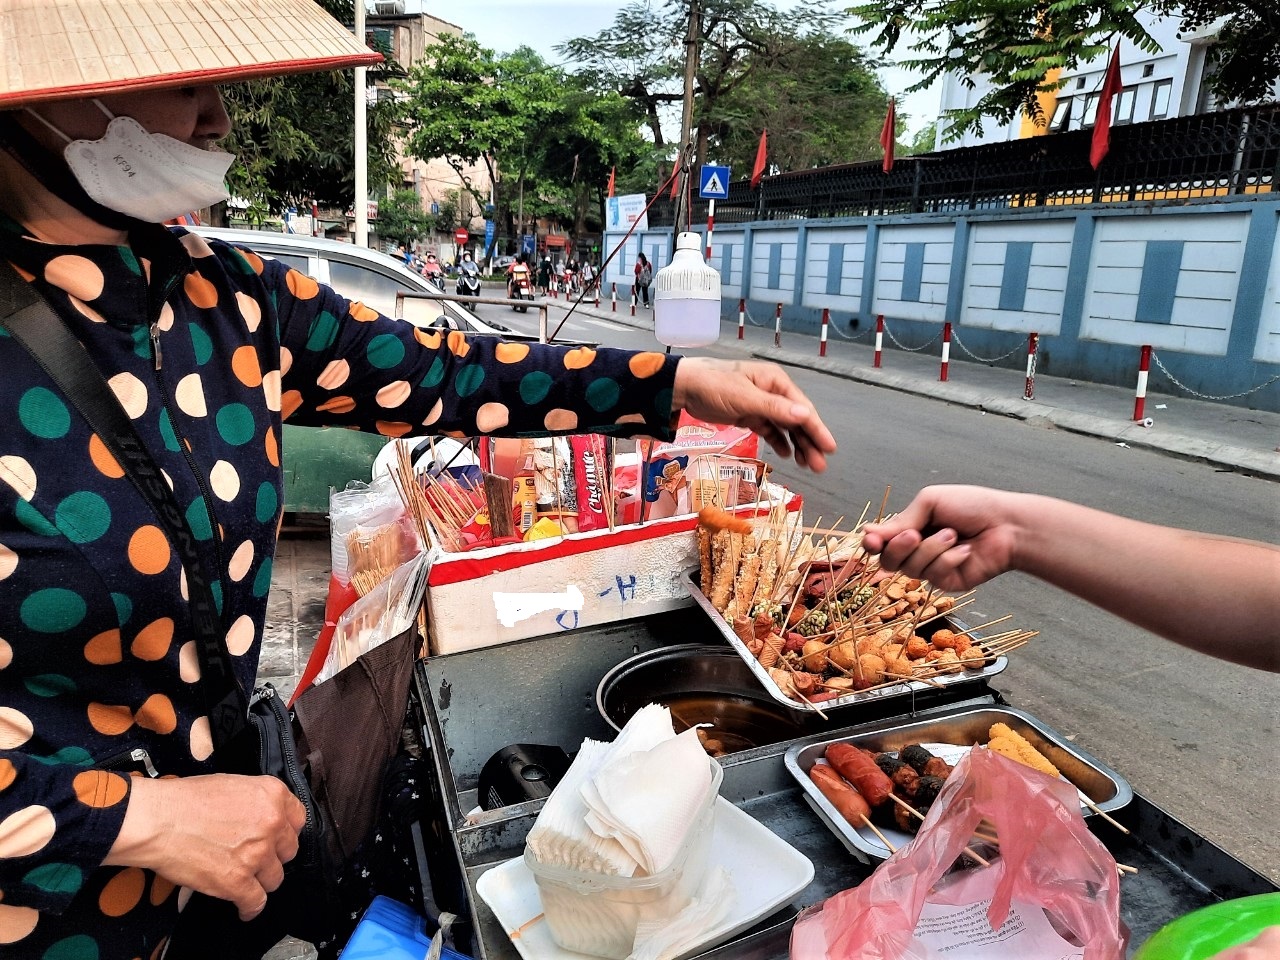 Đồ ăn vặt - Chỉ nhìn vào hình ảnh này bạn đã phải thèm muốn, đúng không? Hãy thưởng thức các món ăn đường phố tuyệt vời của Việt Nam bao gồm bánh mì, phở cuốn, xôi, bánh tráng trộn và nhiều món khác, tất cả đều ở đây. Hãy chiêm ngưỡng và cảm nhận hương vị của đồ ăn vặt qua bức ảnh này.